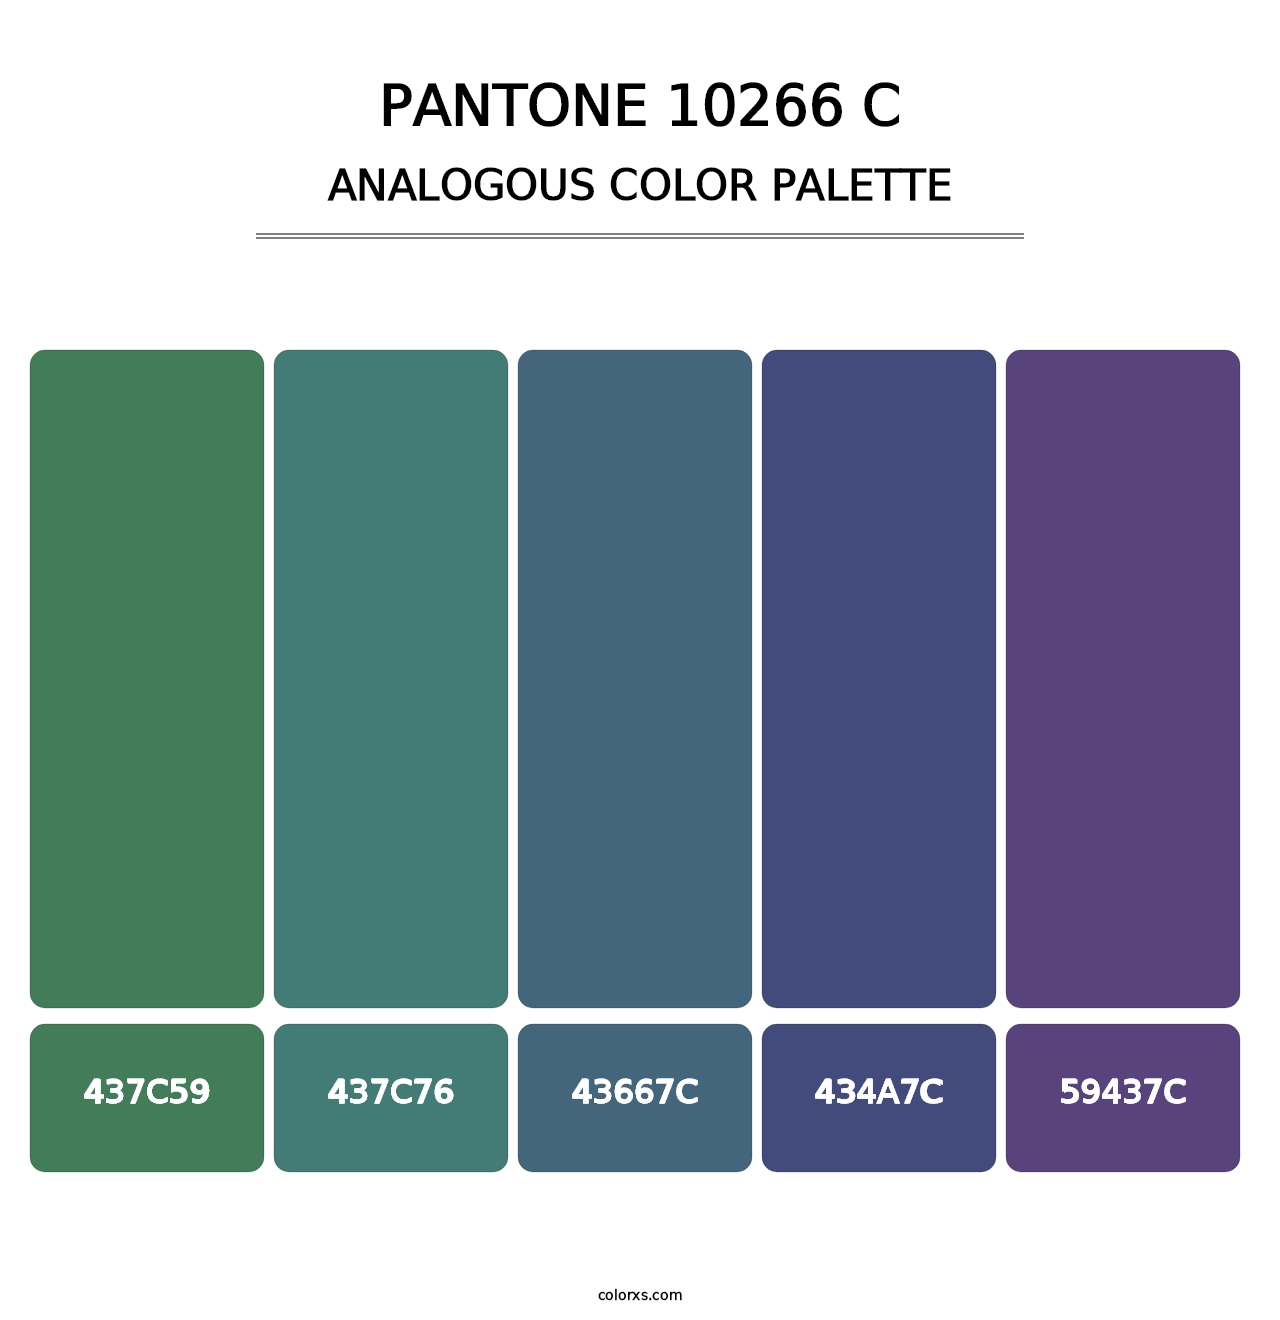 PANTONE 10266 C - Analogous Color Palette